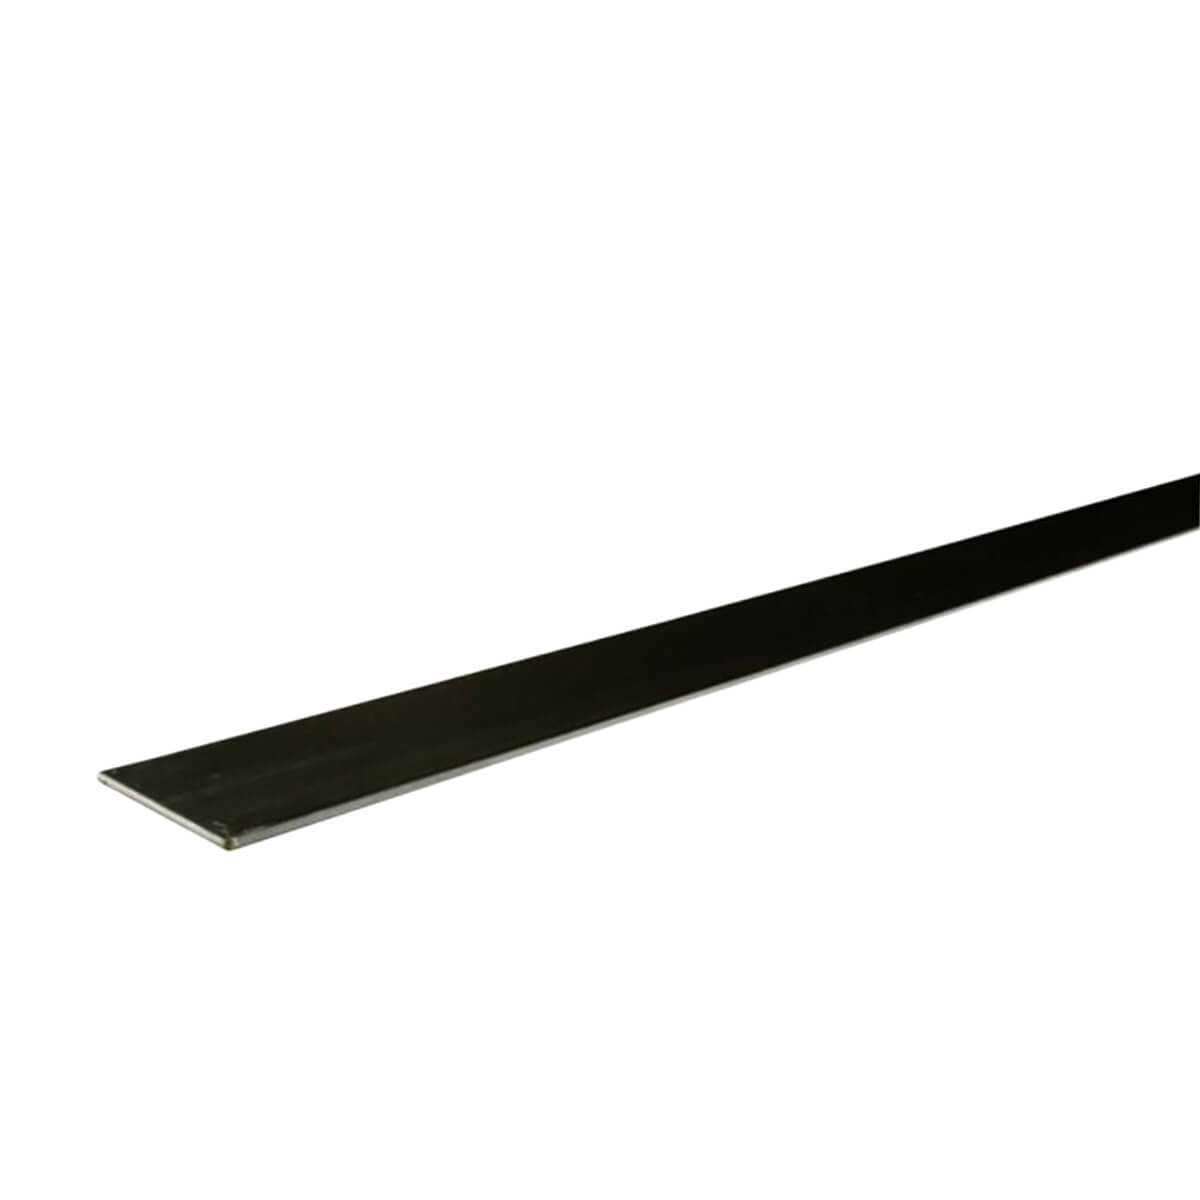 Flat Bar - Black - Steel - 1/2-in X 48-in